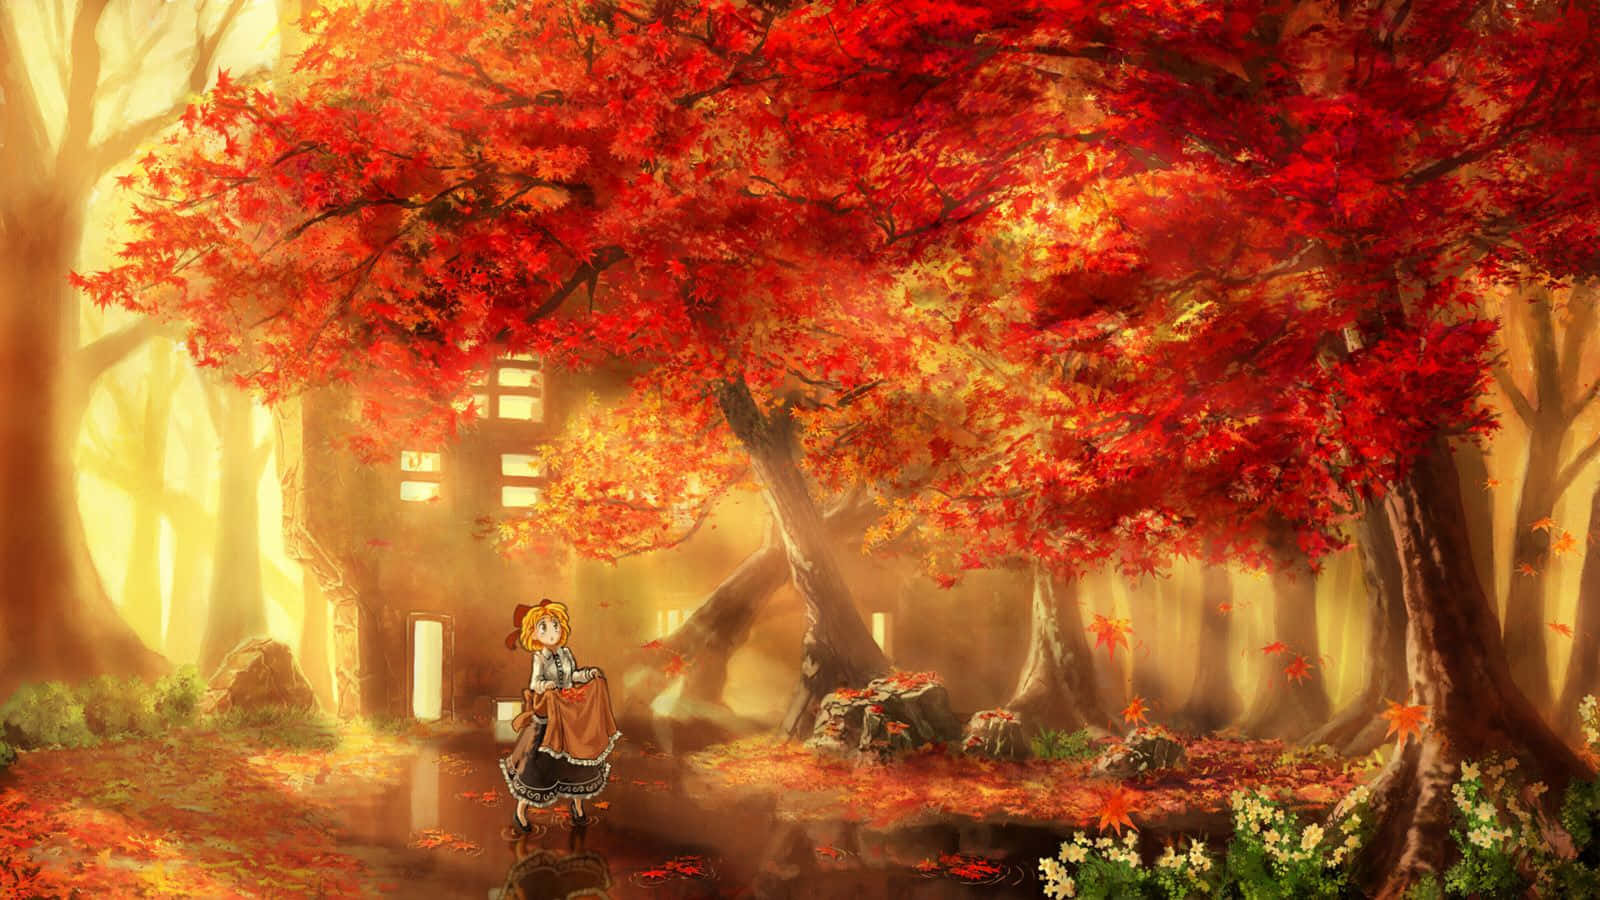 Tagen Rolig Pause I Dette Fredelige Anime-skovlandskab.